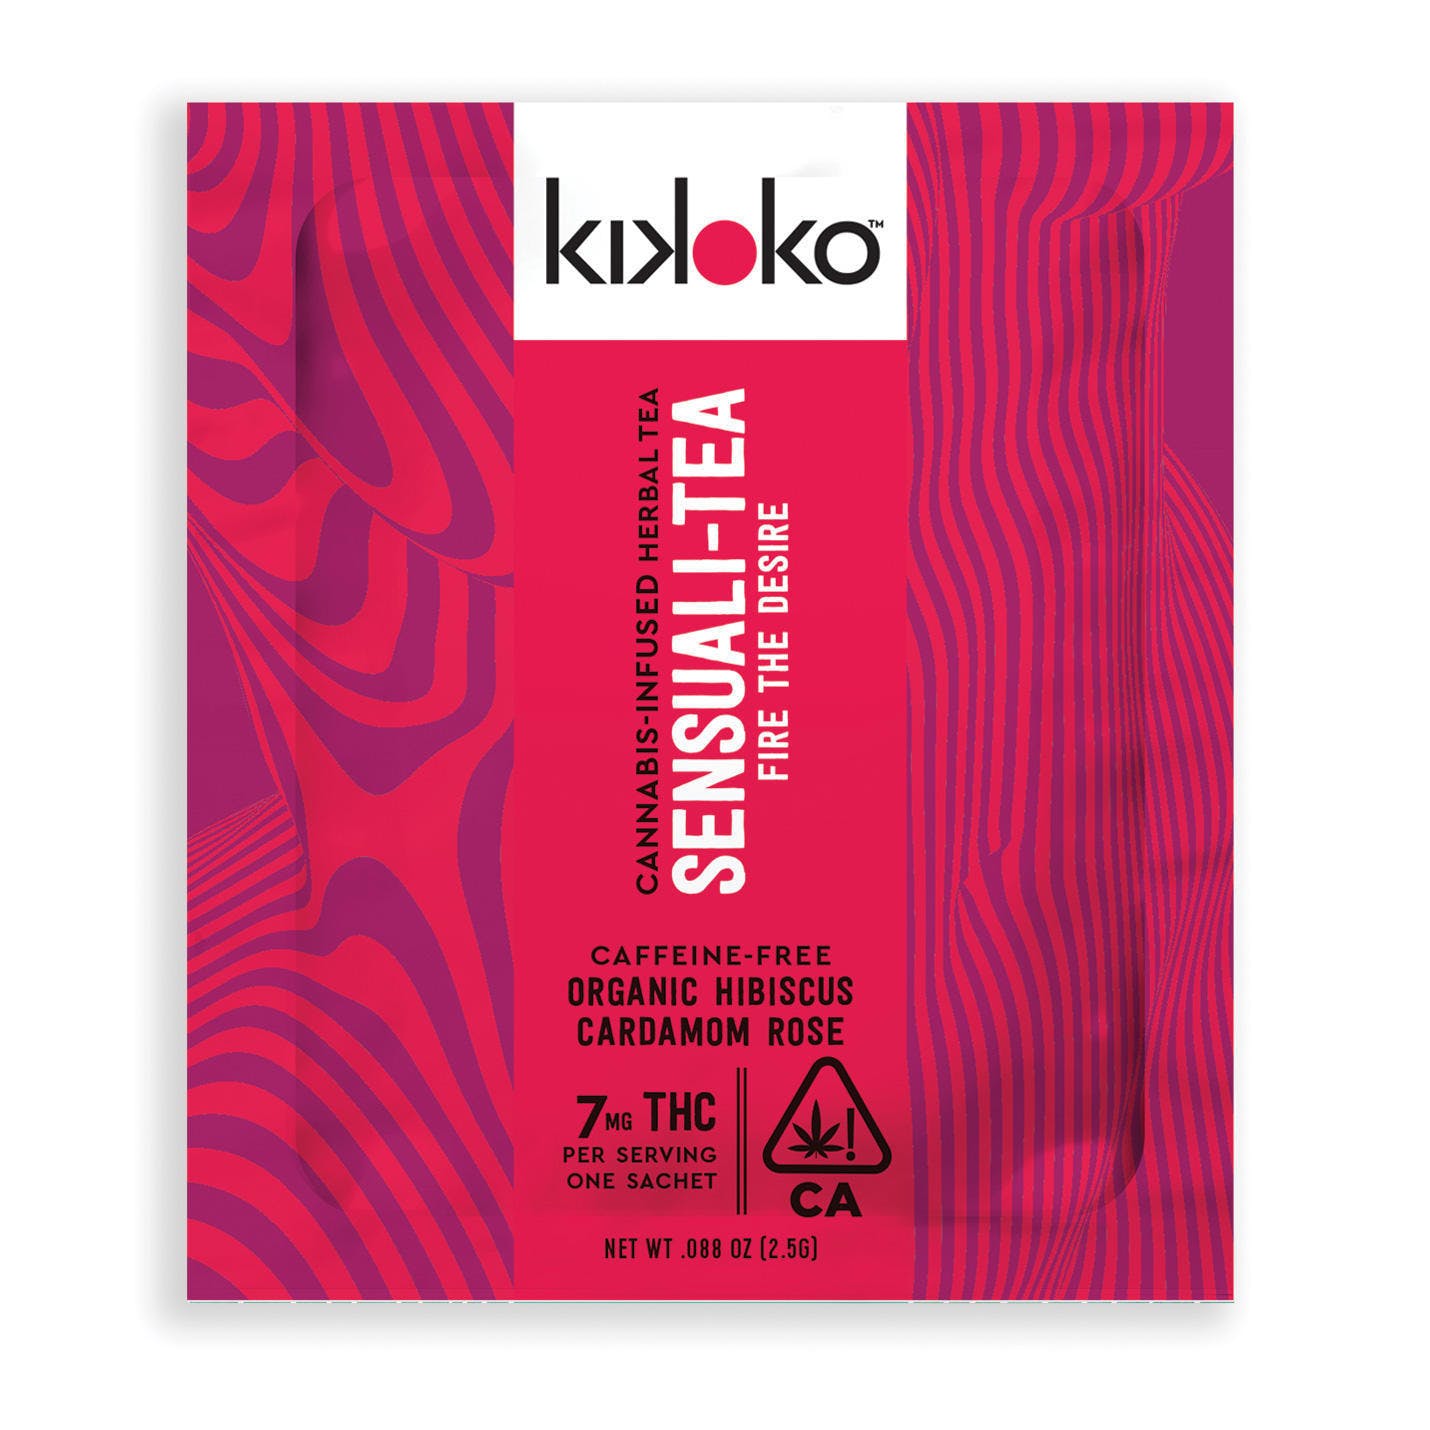 Kikoko Sensuali Tea - Tea 7mg THC